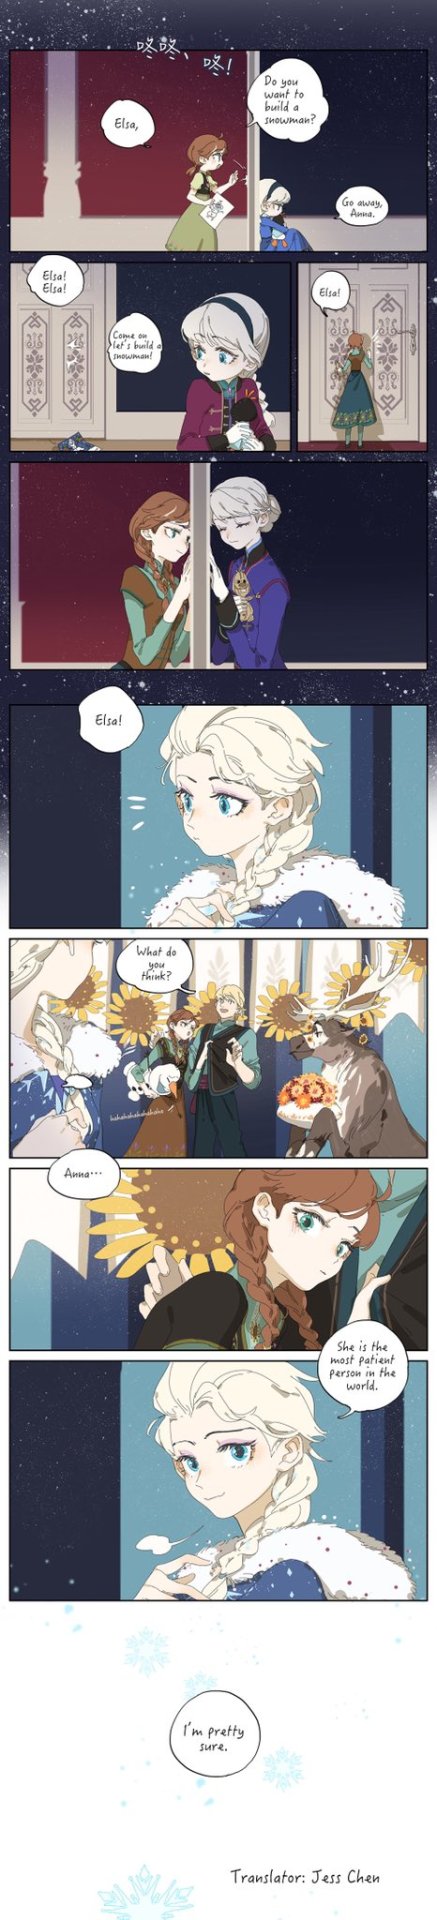 reine - Fan-arts de La Reine des Neiges (trouvés sur internet) - Page 3 Budaim13